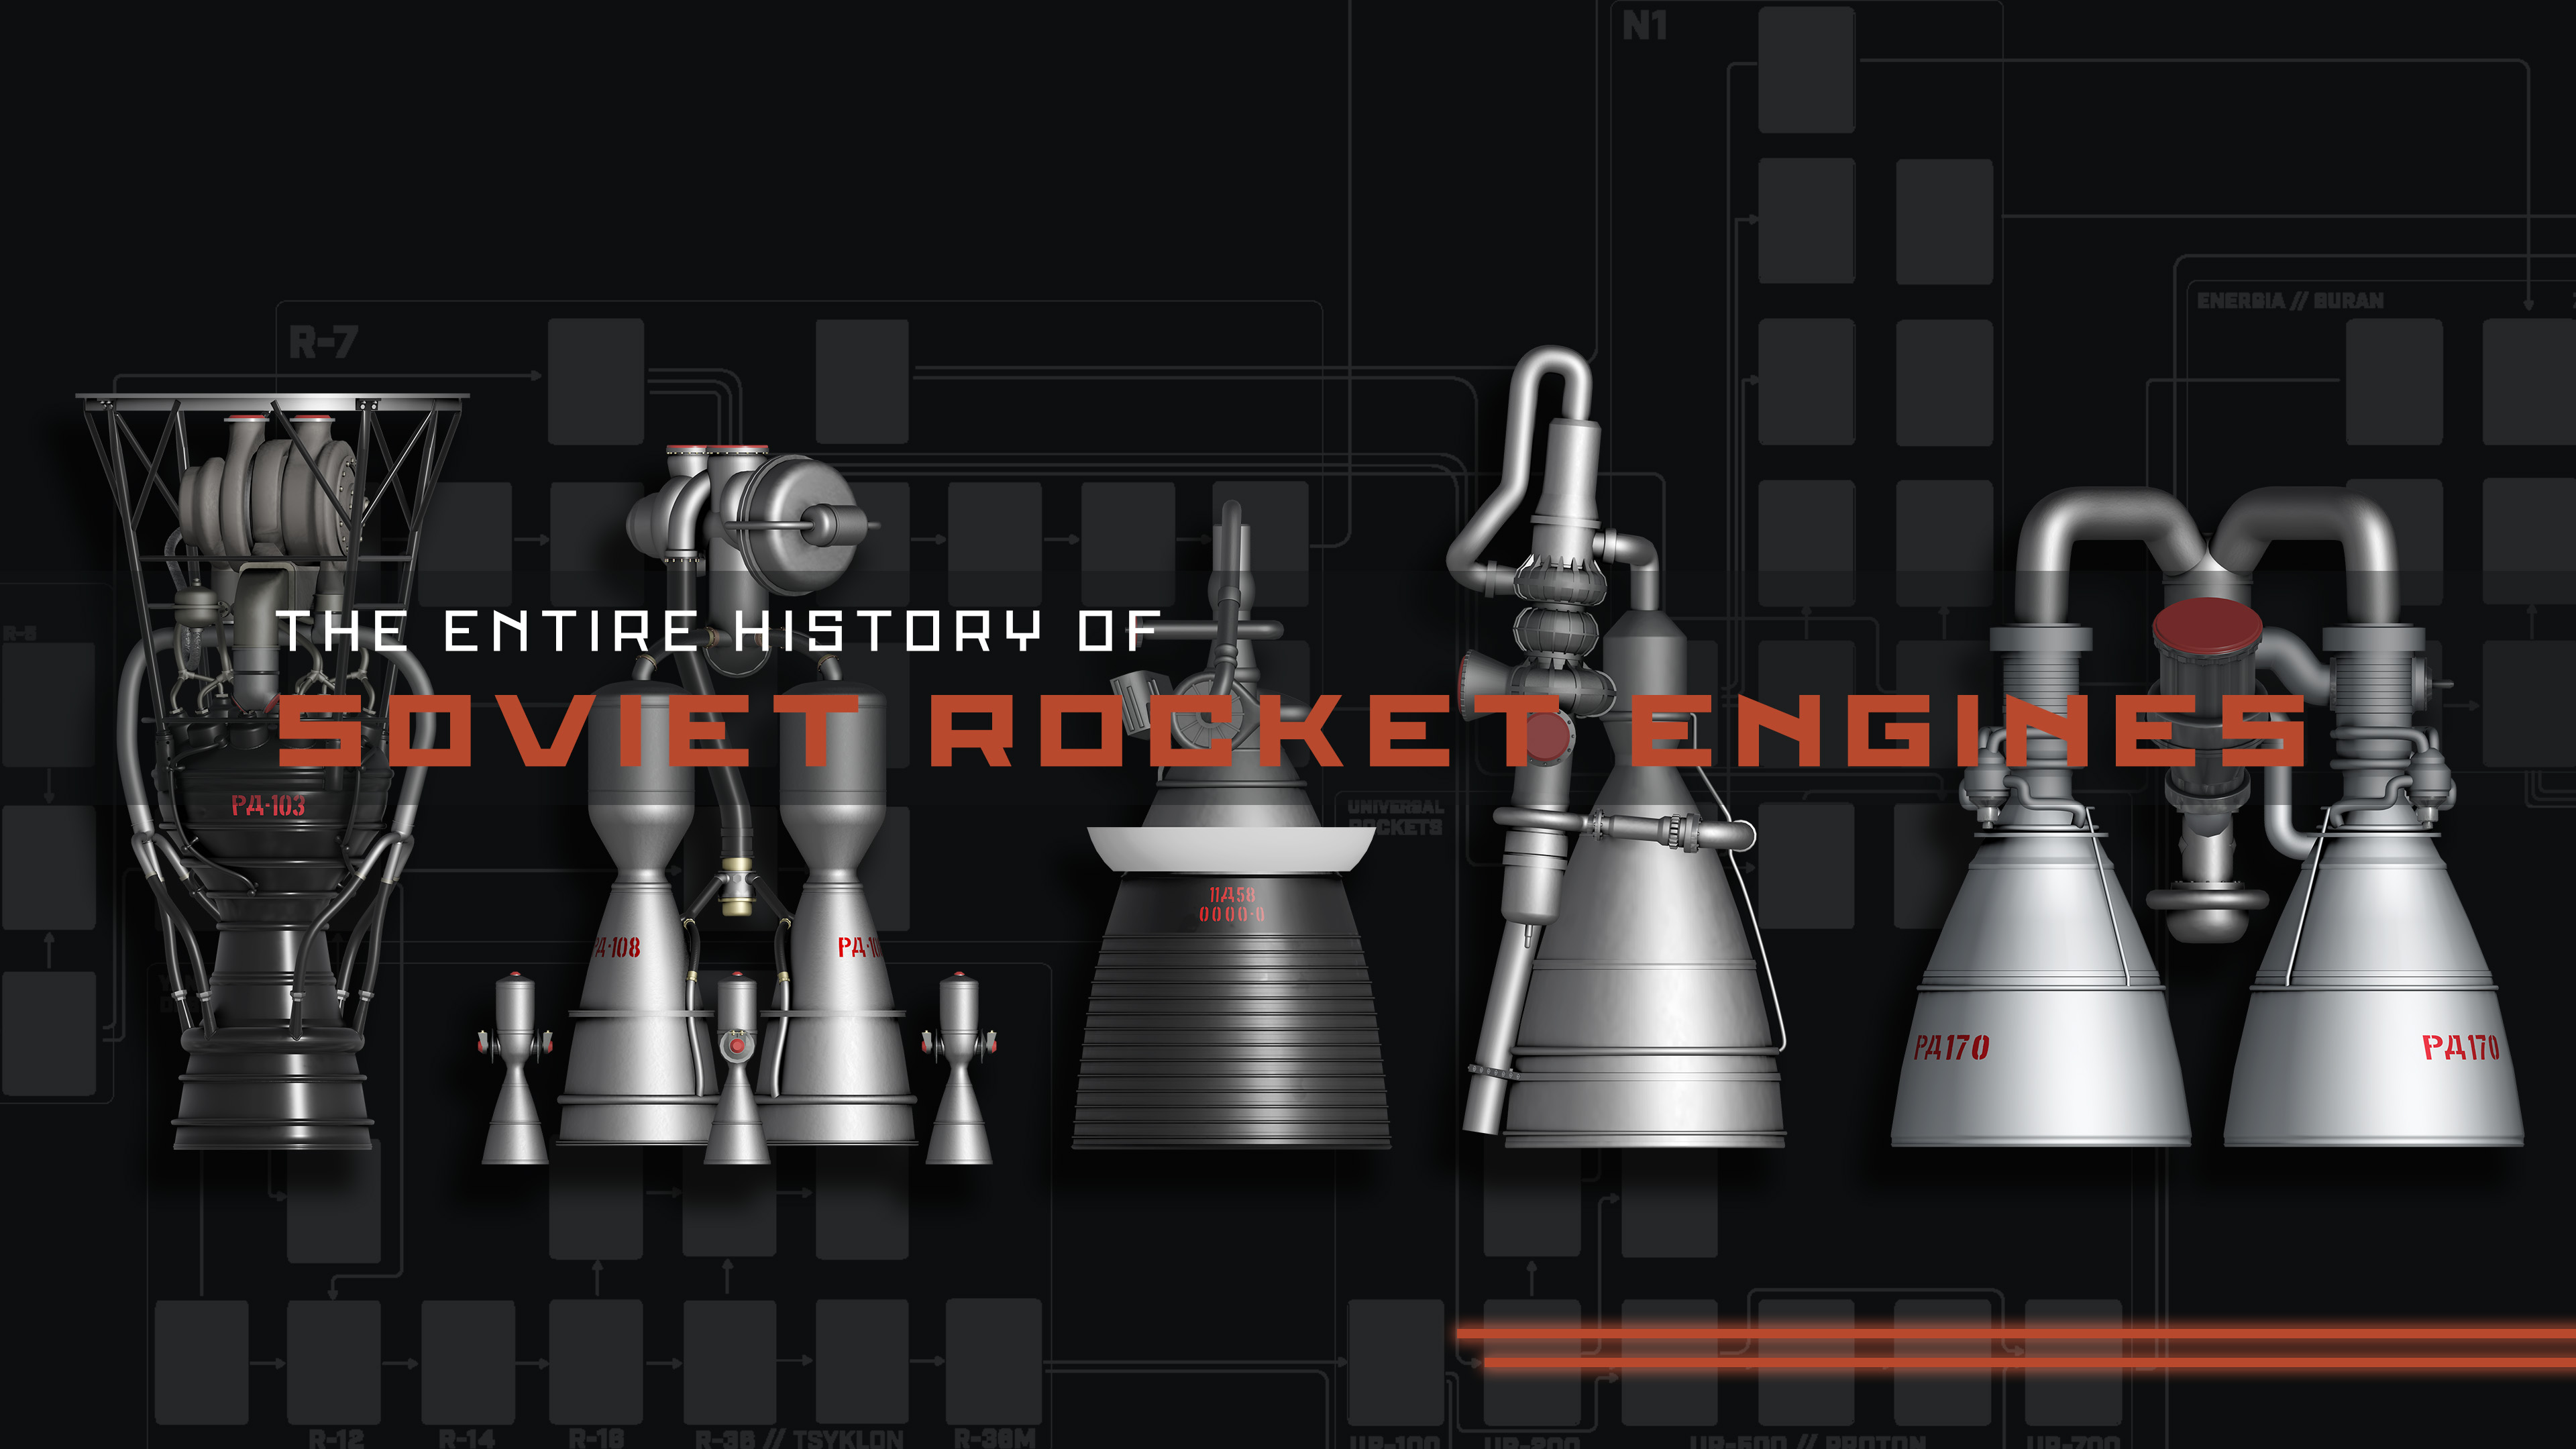 Soviet Rocket Engines Everyday Astronaut